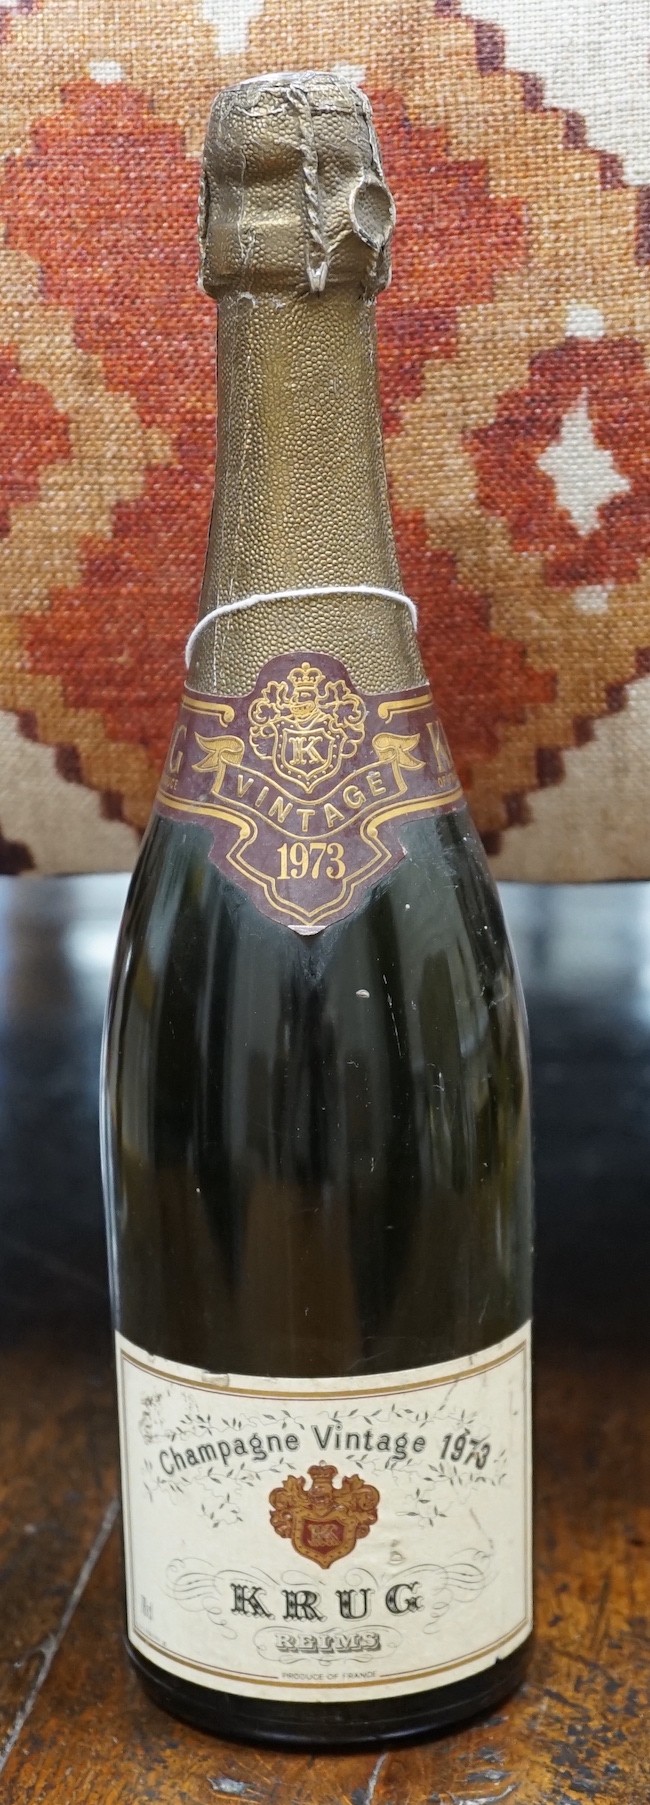 A 1973 bottle of Vintage Krug Champagne of Reims                                                                                                                                                                            